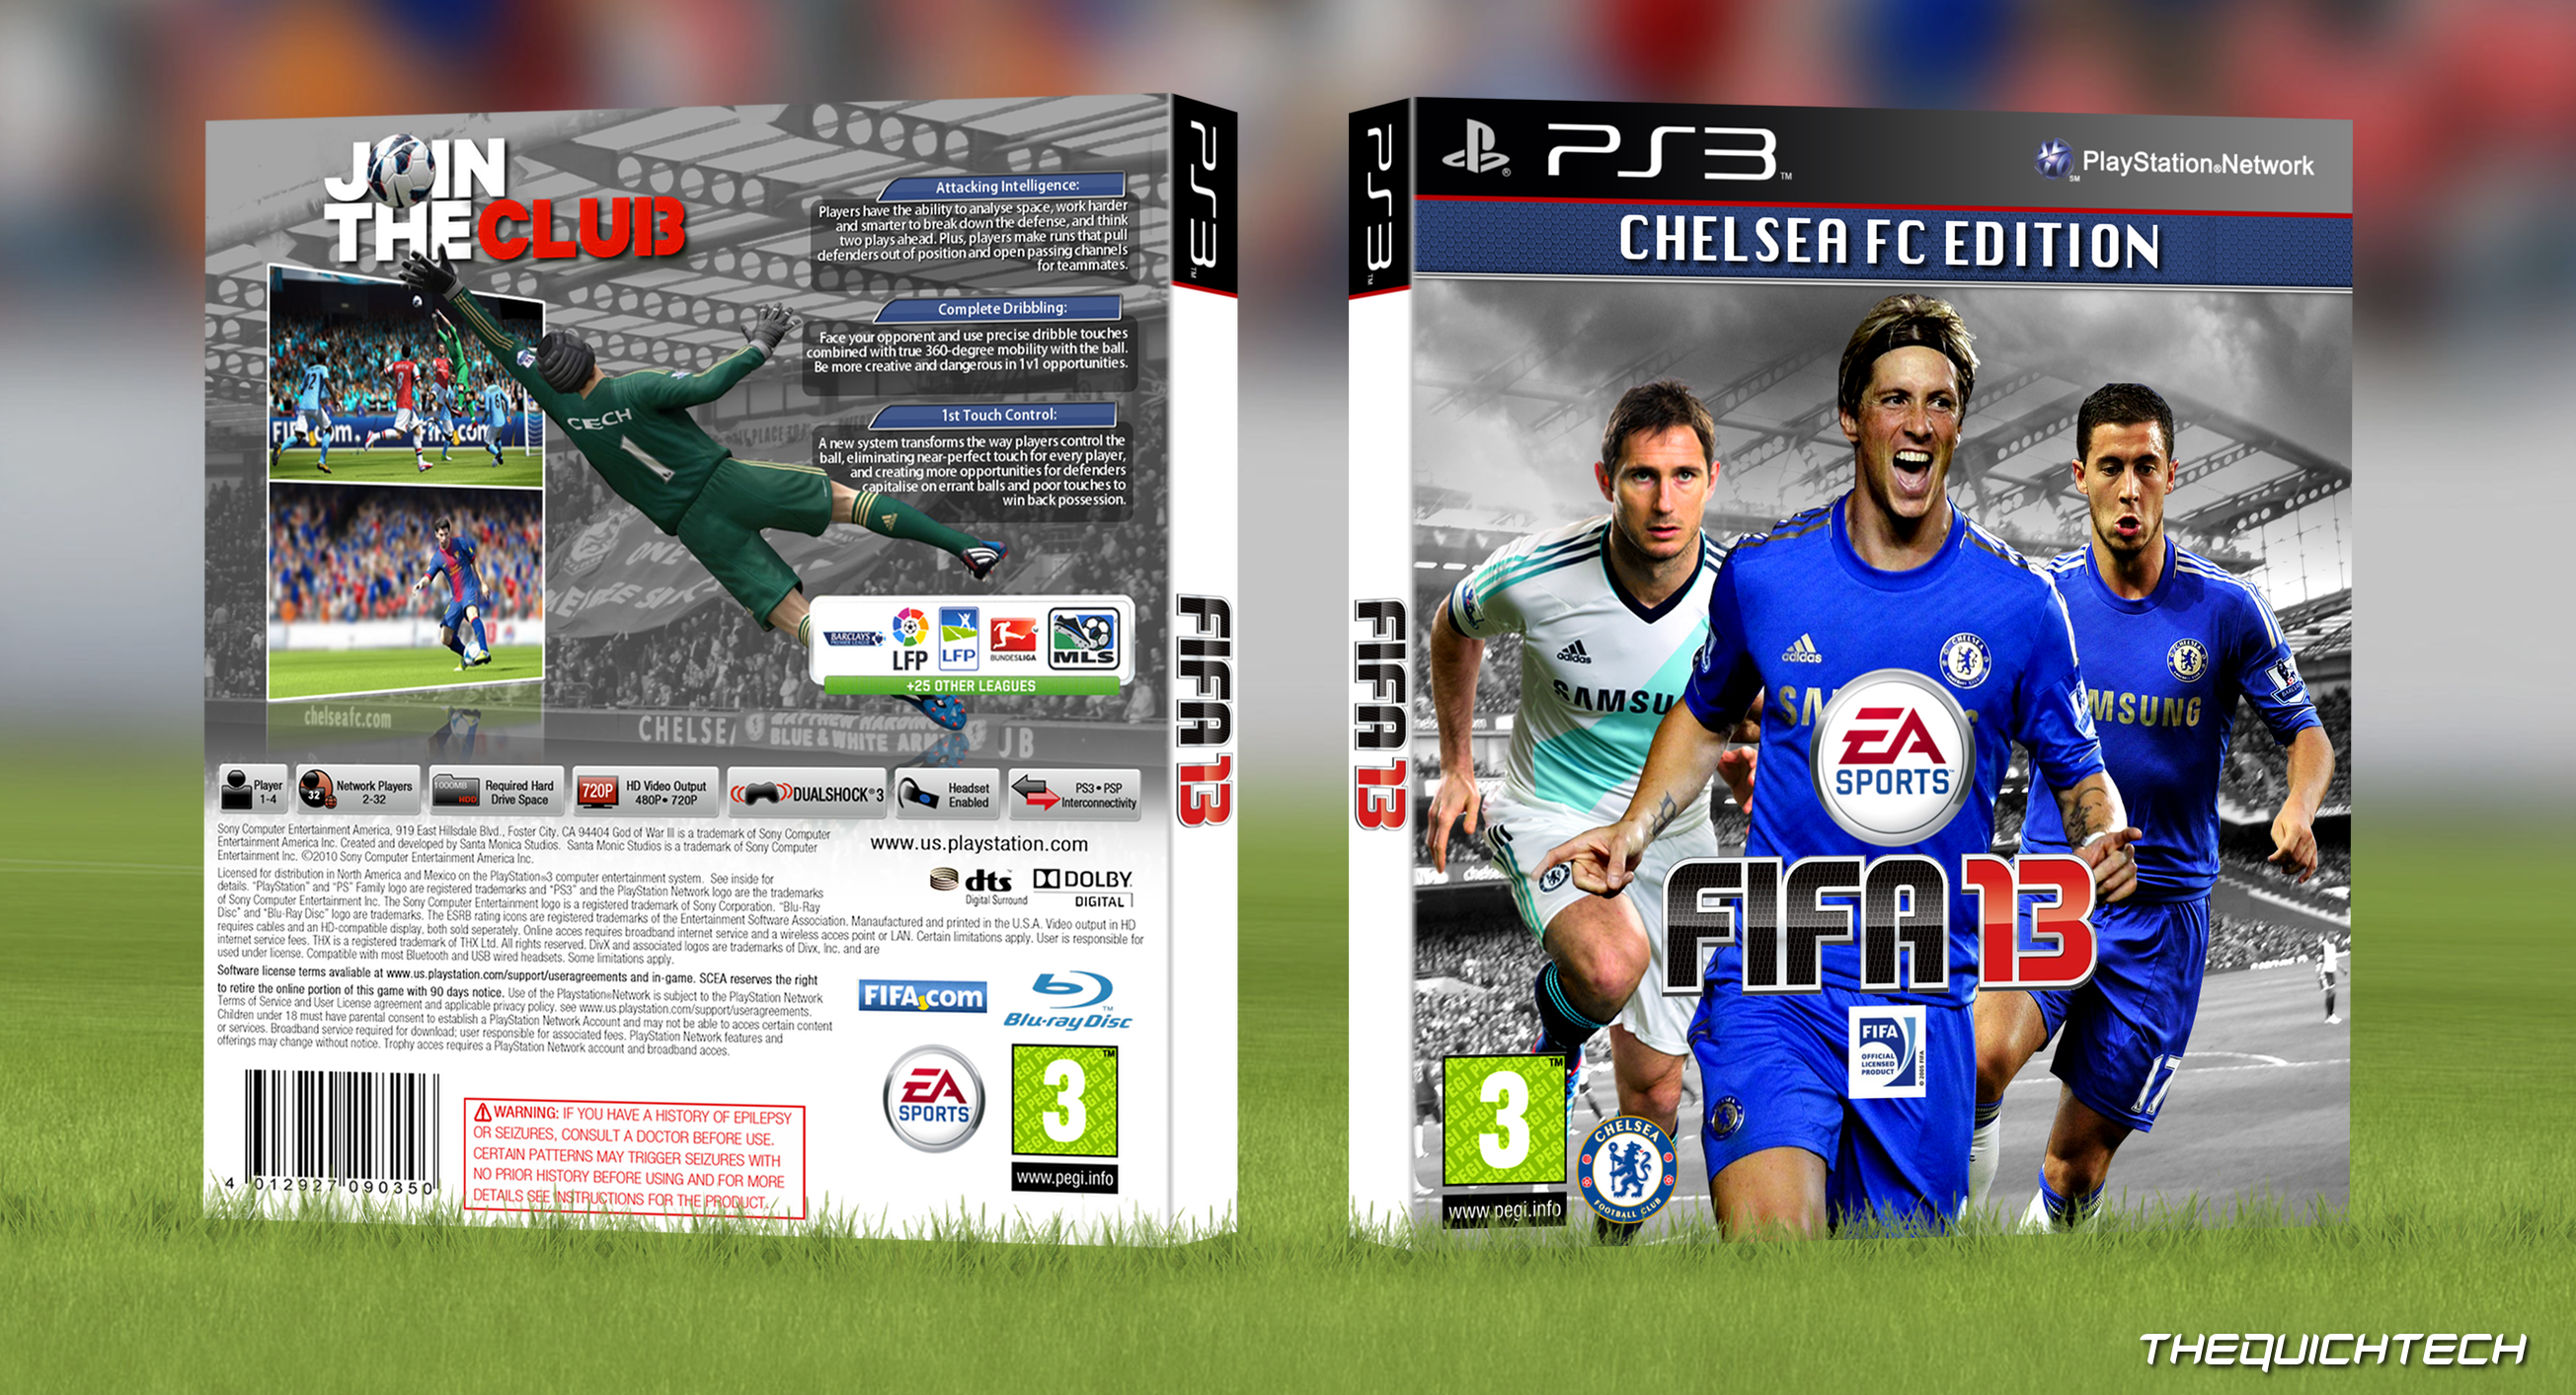 FIFA 13: Chelsea FC Edition box cover